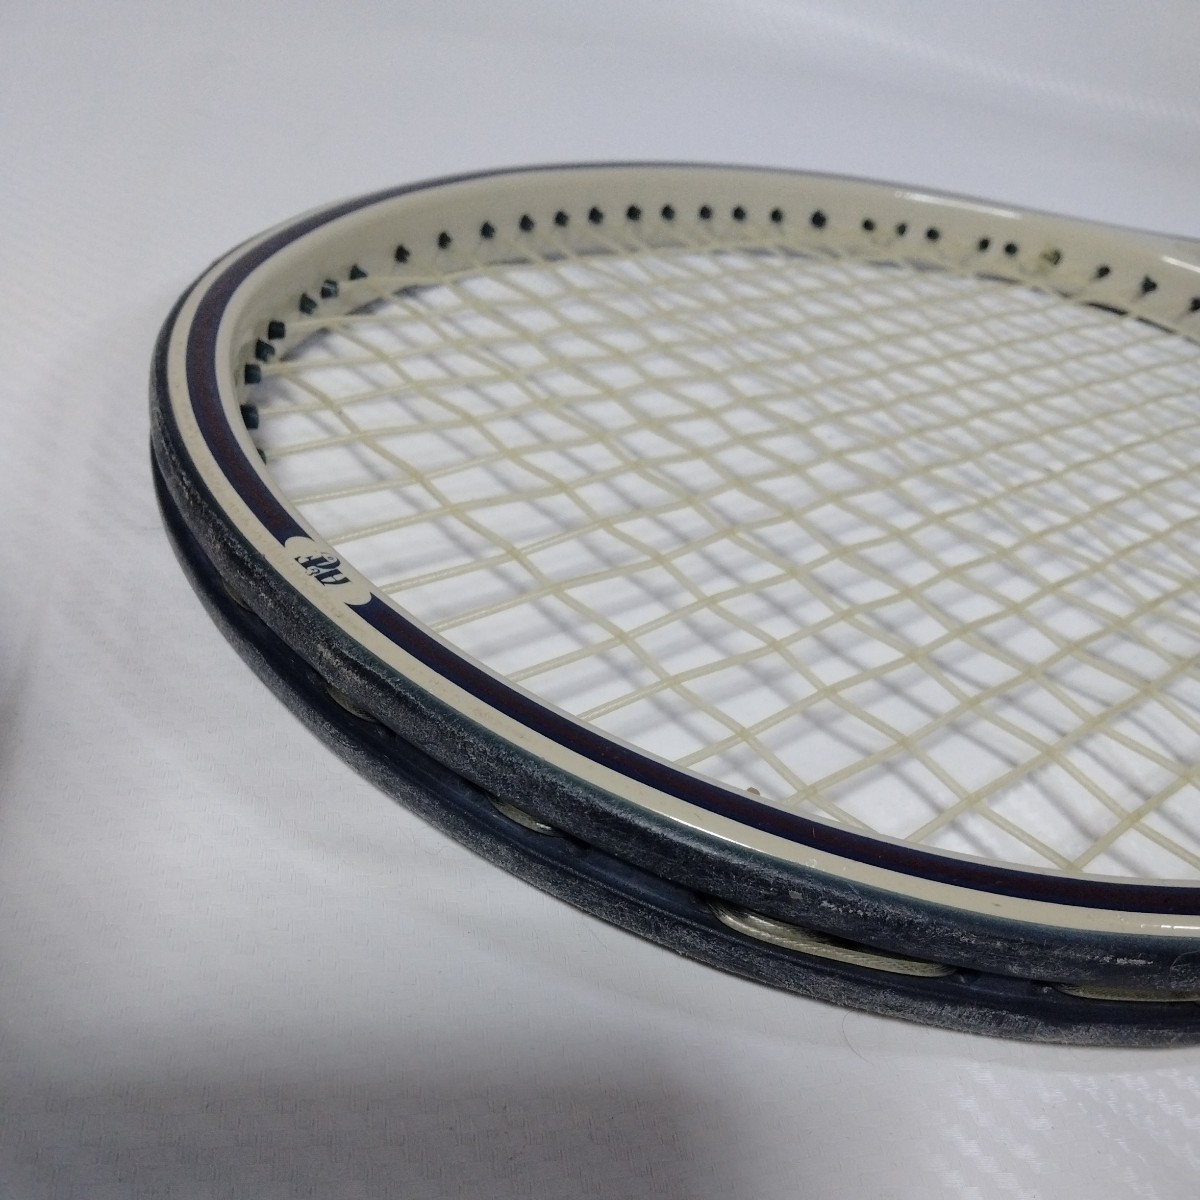 レア品アバクロ硬式テニスラケット ロッドレーバーモデル_画像8